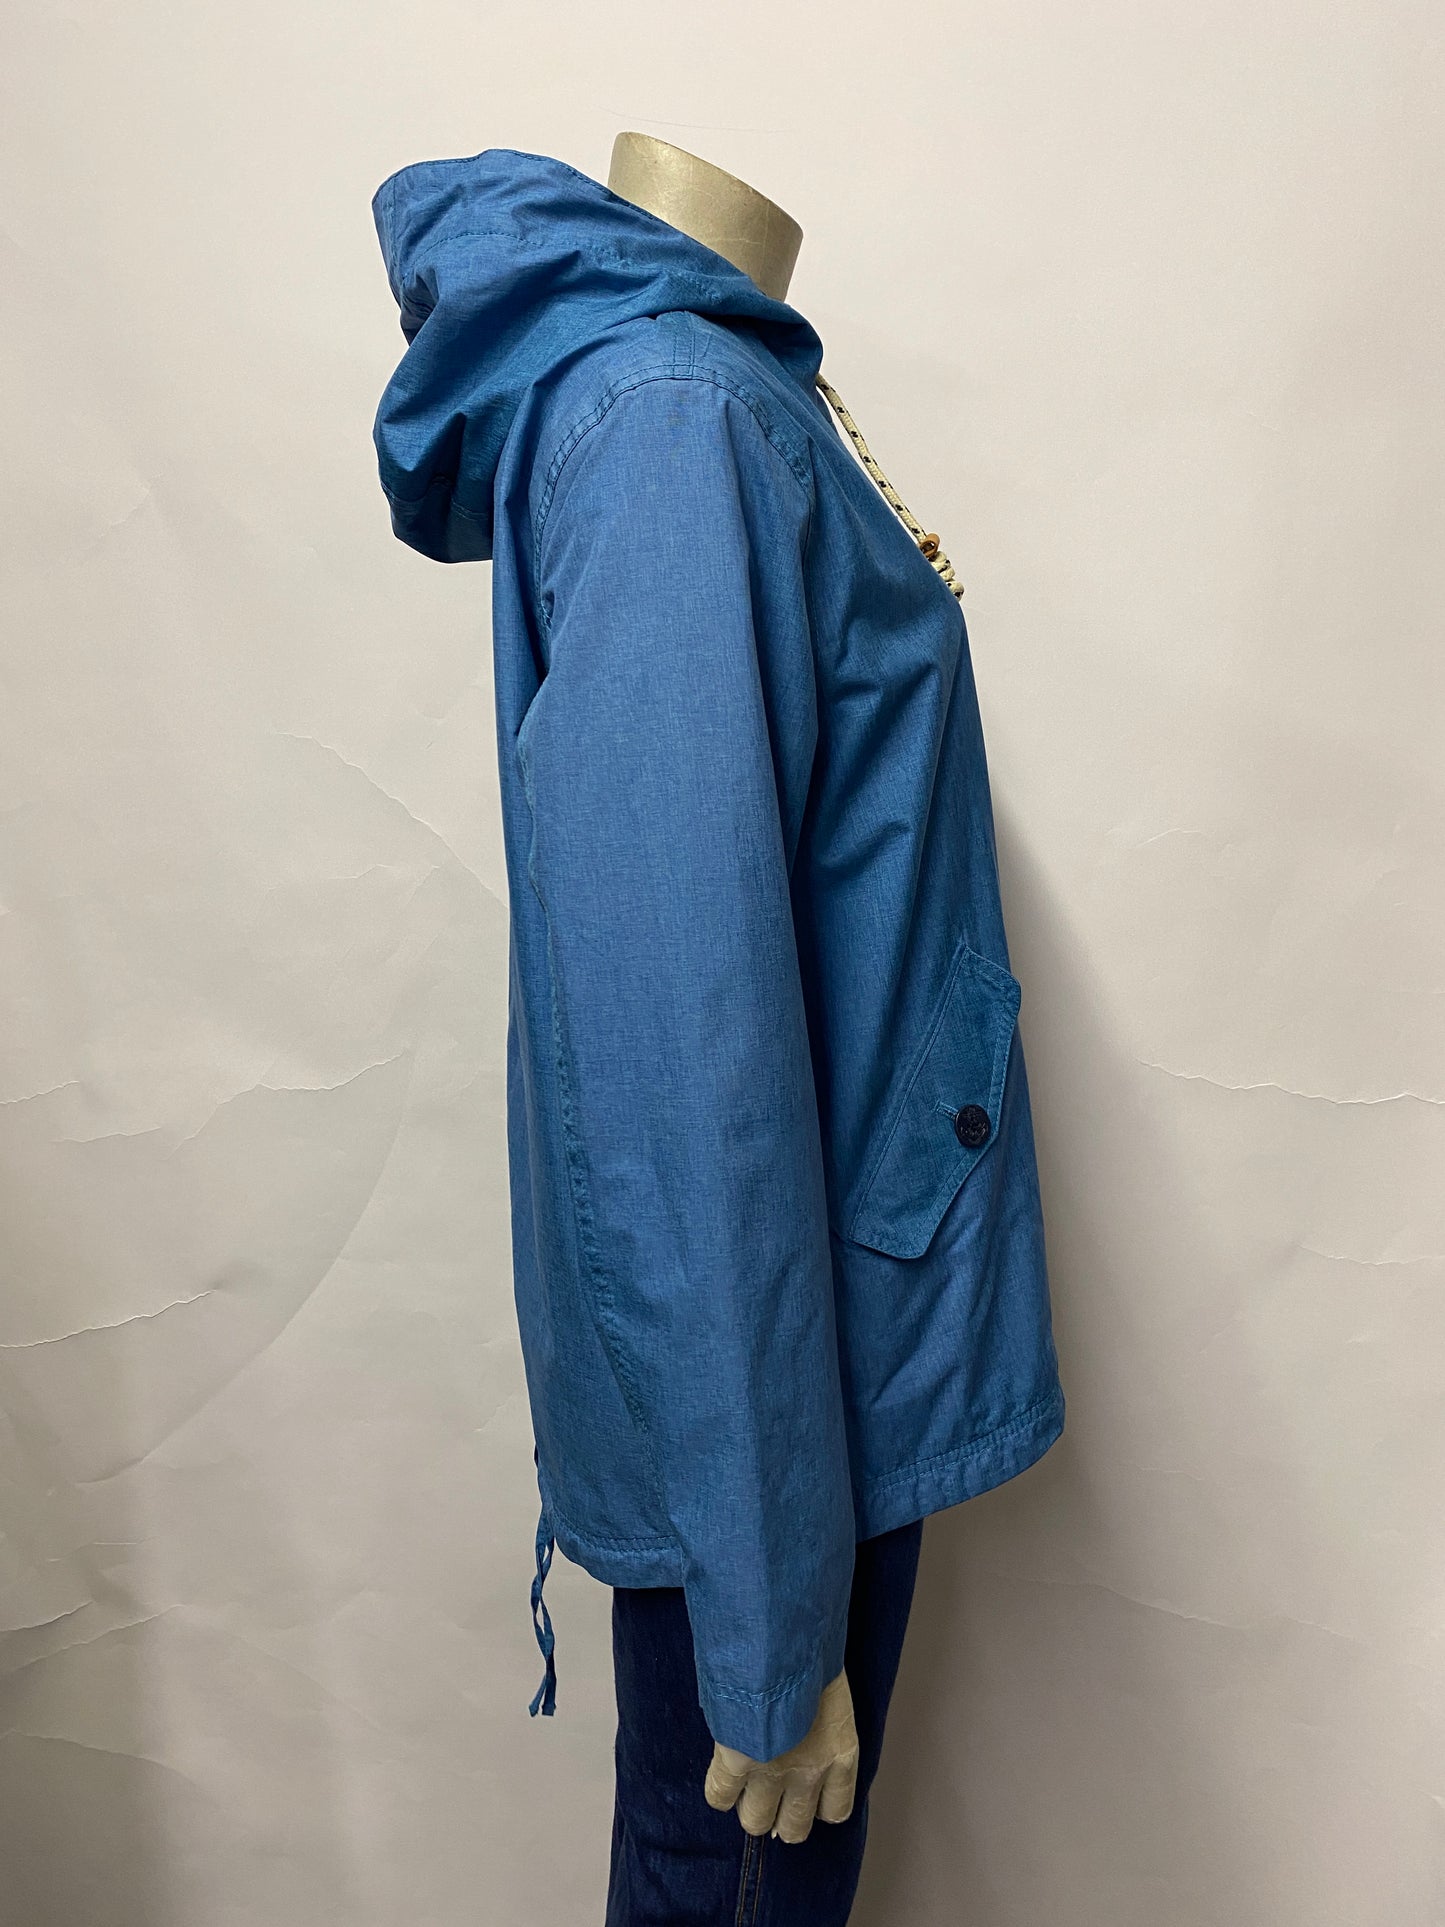 Seasalt Blue Hooded Rain Jacket 10